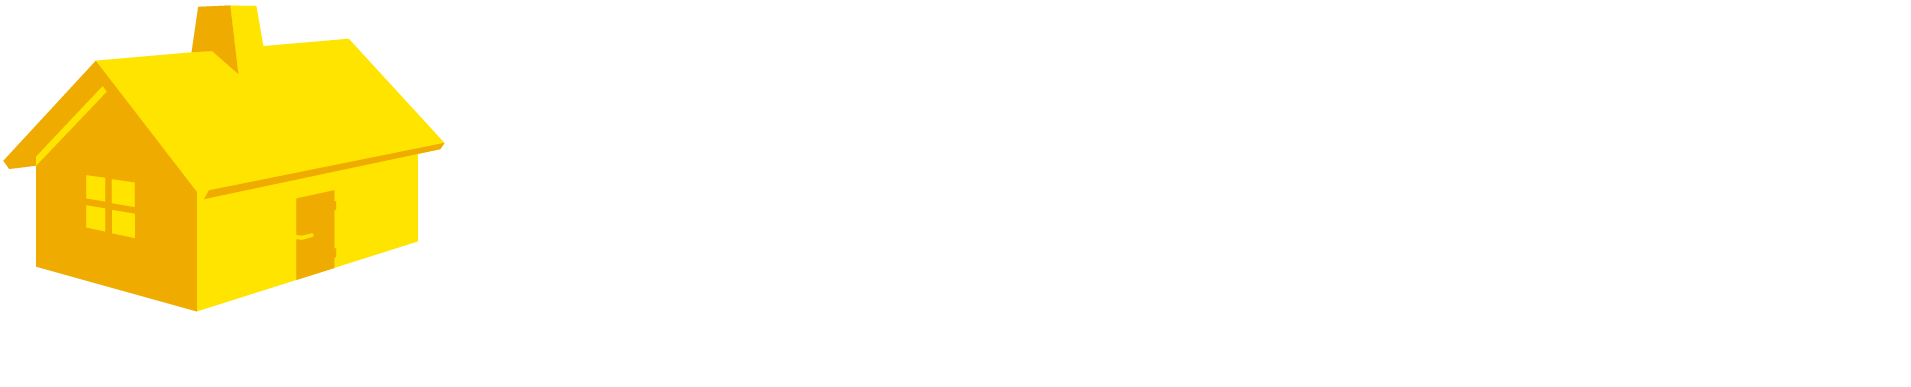 smalandsvillan_logo_white